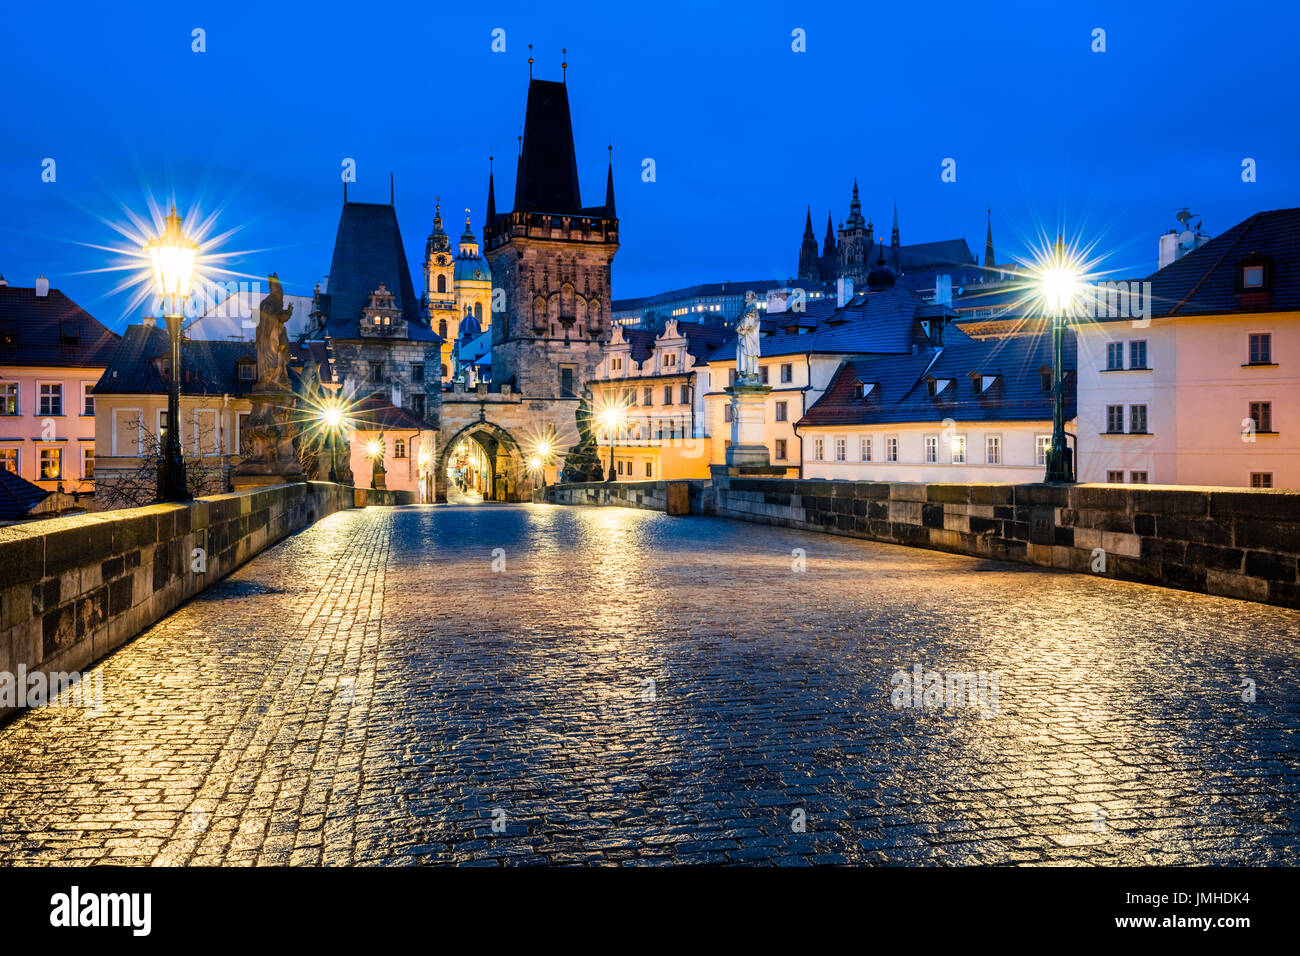 L'Europe, République tchèque, Tchéquie, Prague, vieille ville historique, l'UNESCO, le pont Charles, monument emblématique, Karluv Most sur la rivière Vltava ou Moldau Banque D'Images